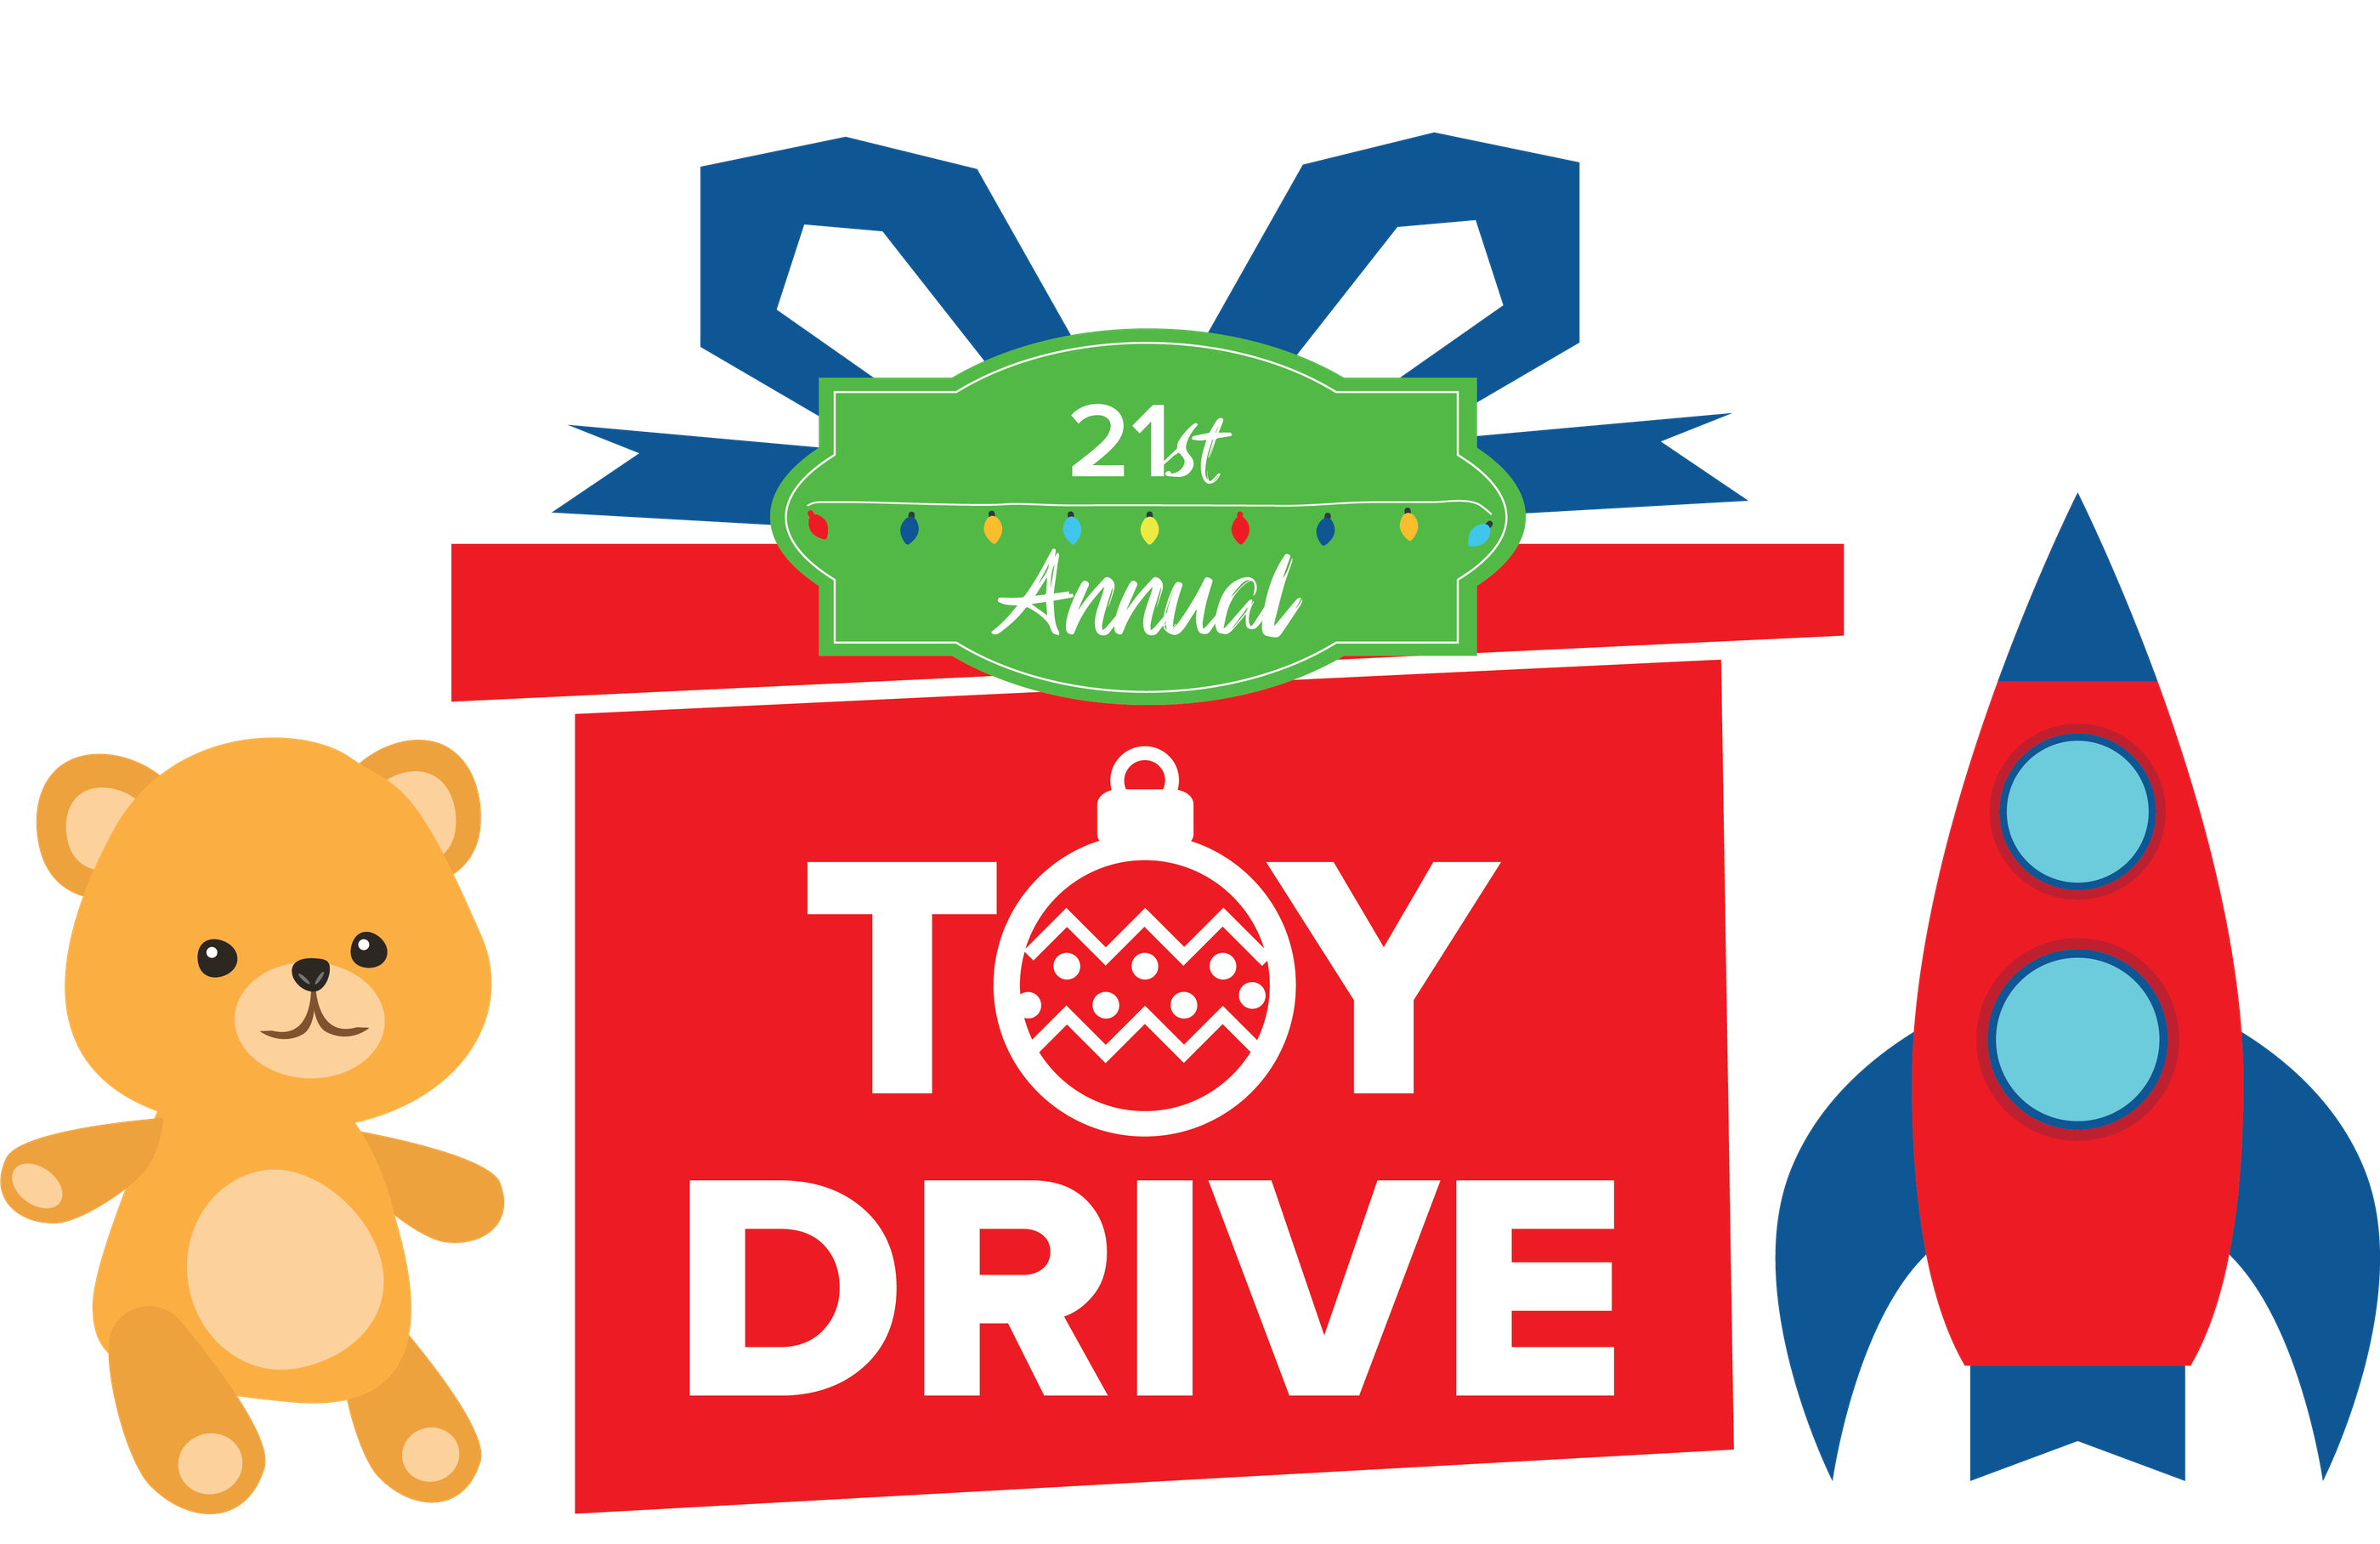 WRTV Toy Drive Logo